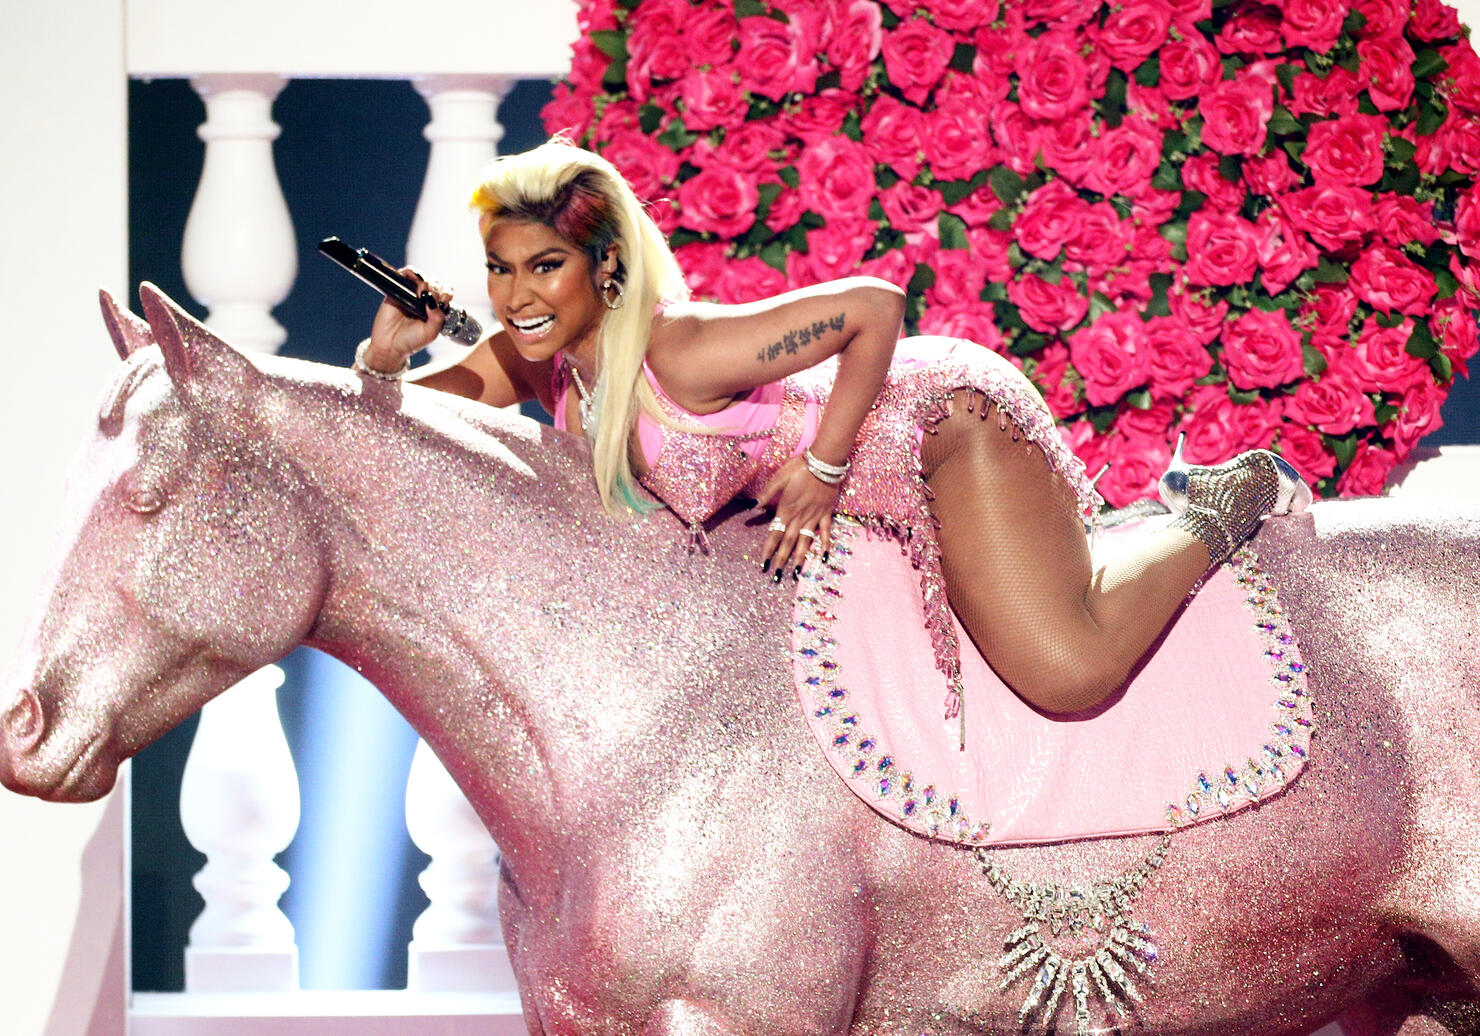 Nicki Minaj Announces New Alter Ego: Romania The Mermaid.